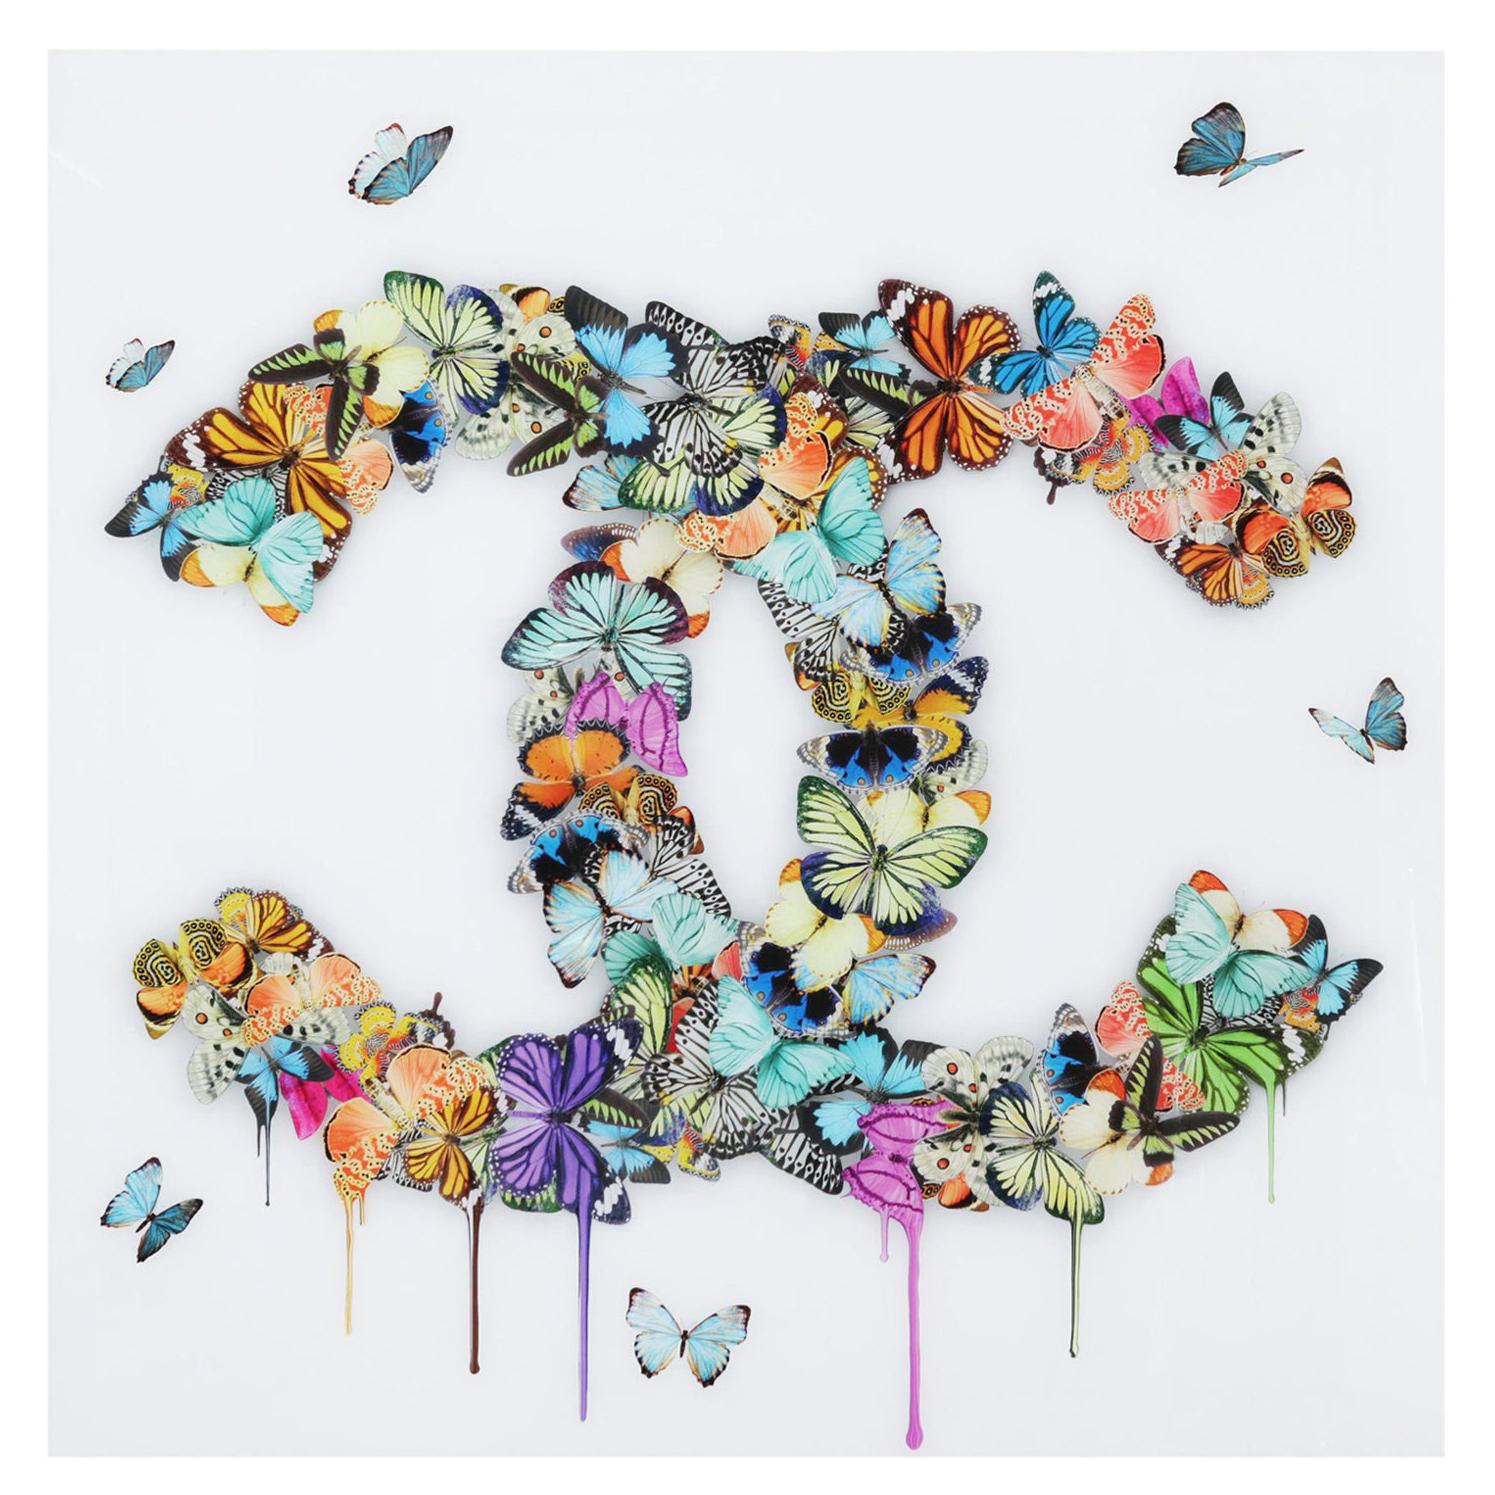 Wandschmuck aus Plexiglas mit Schmetterlingen